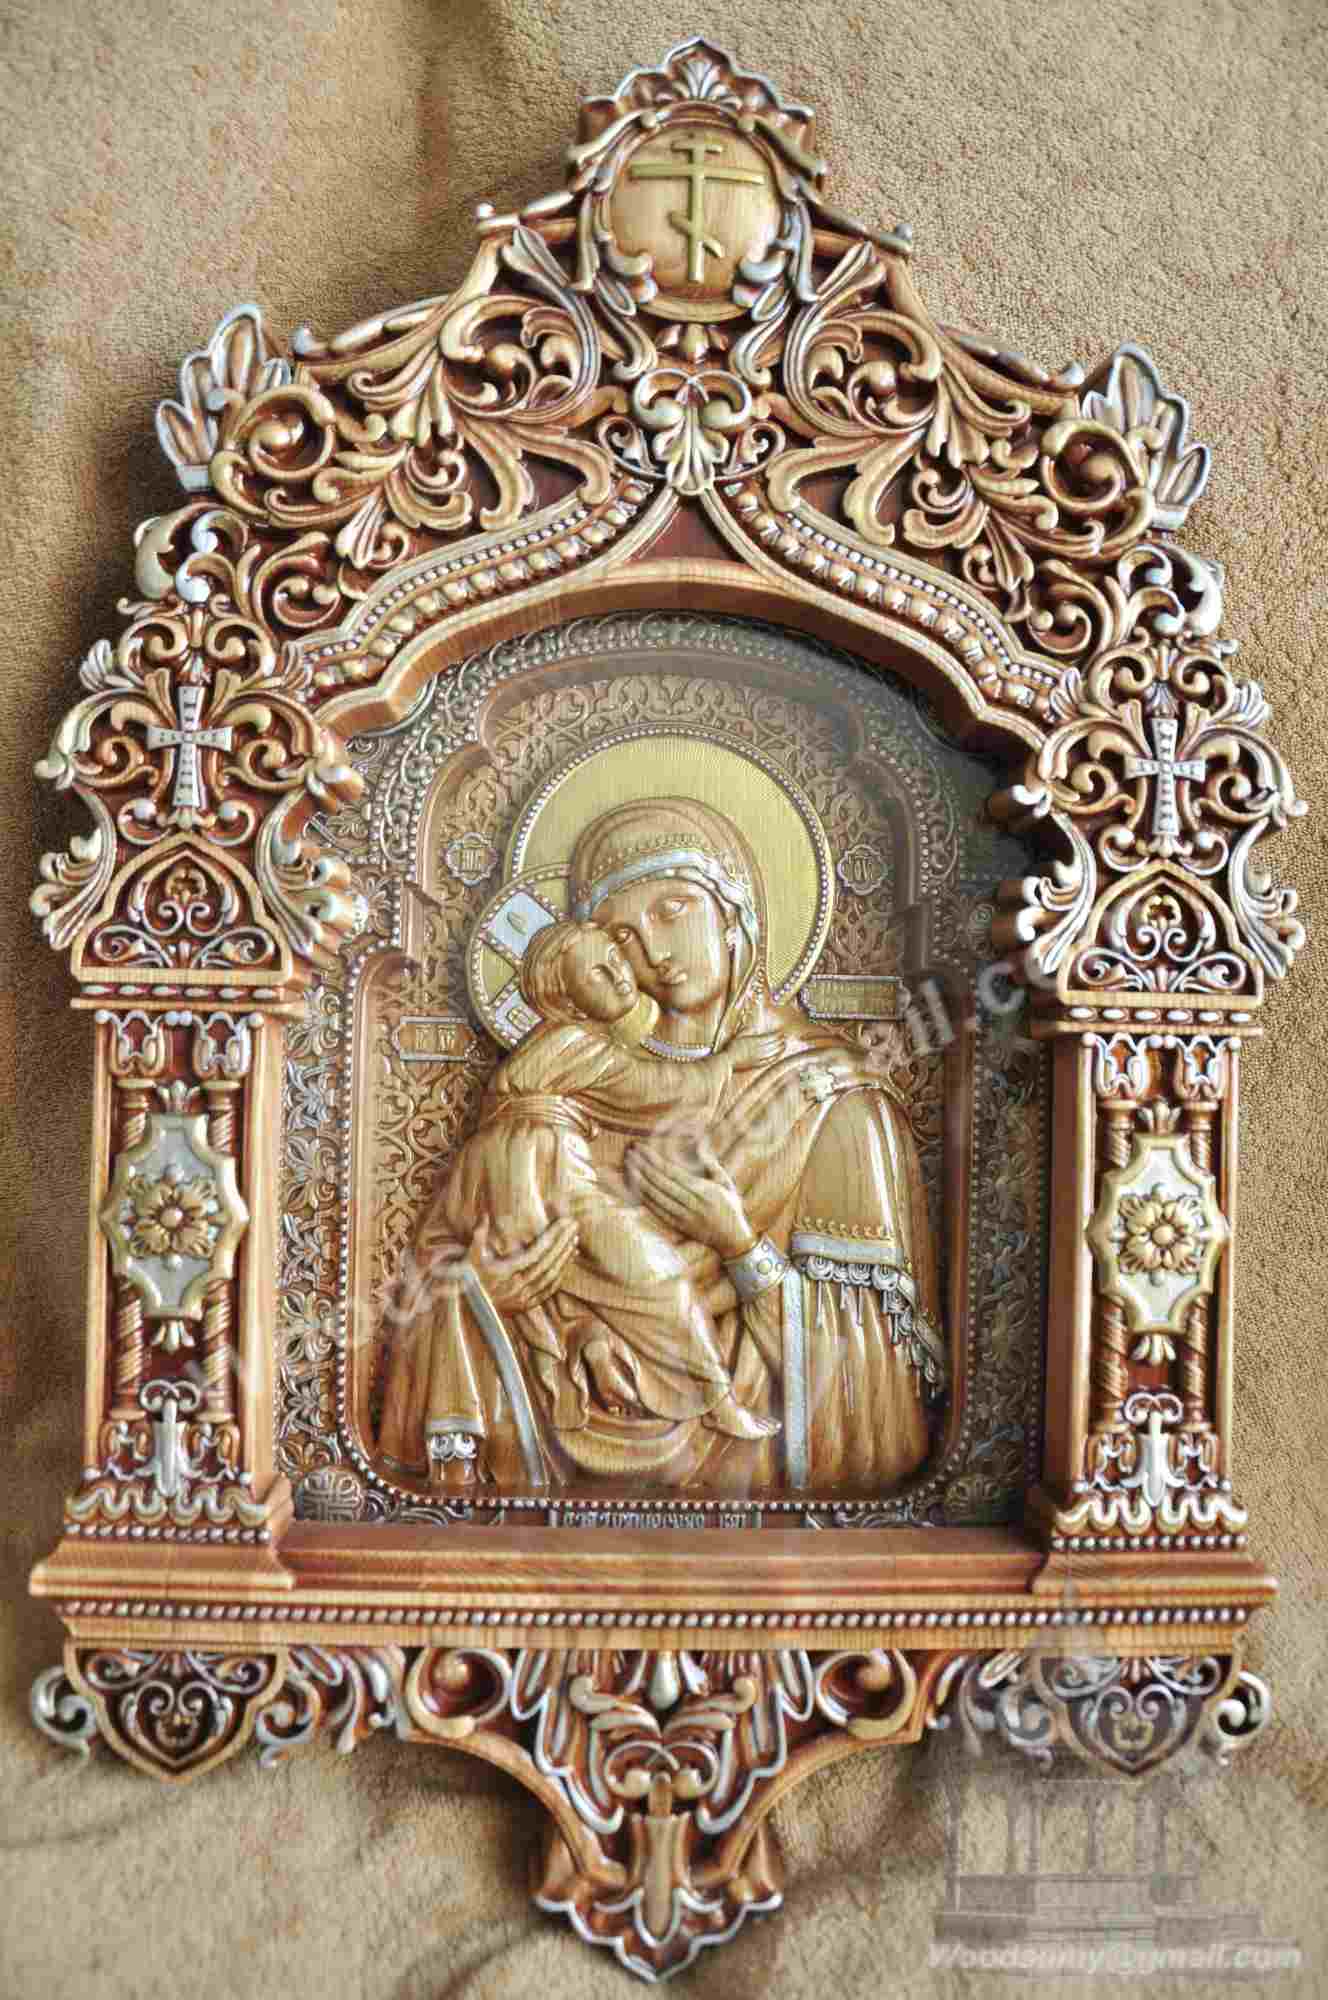 Резная икона "Владимирской Божьей Матери" с киотом